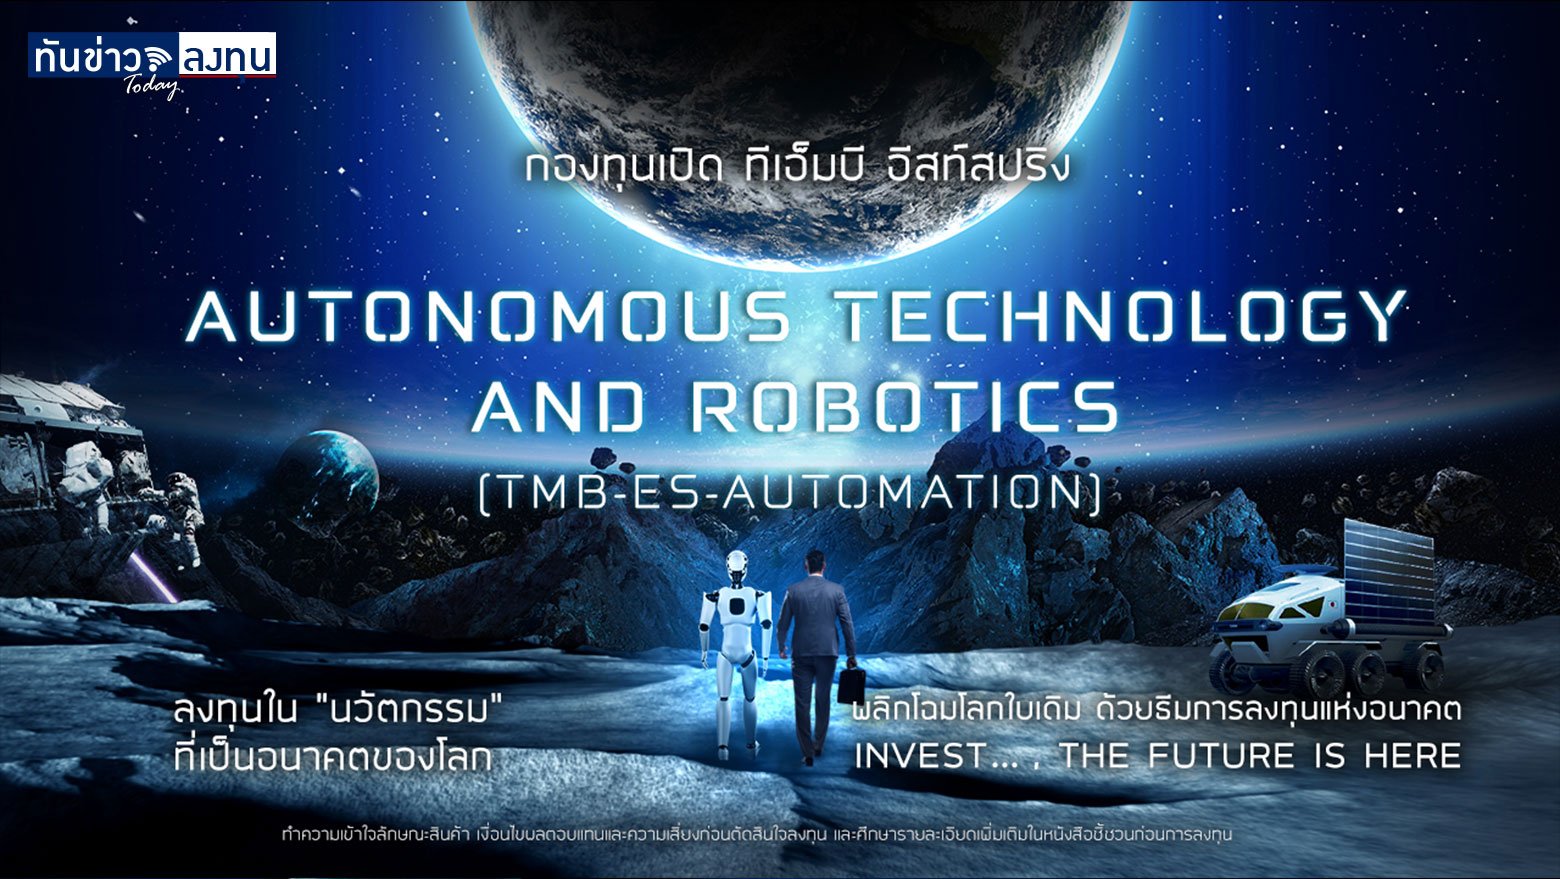 กองทุนเปิด ทีเอ็มบี อีสท์สปริง Autonomous Technology and Robotics (TMB-ES-AUTOMATION)